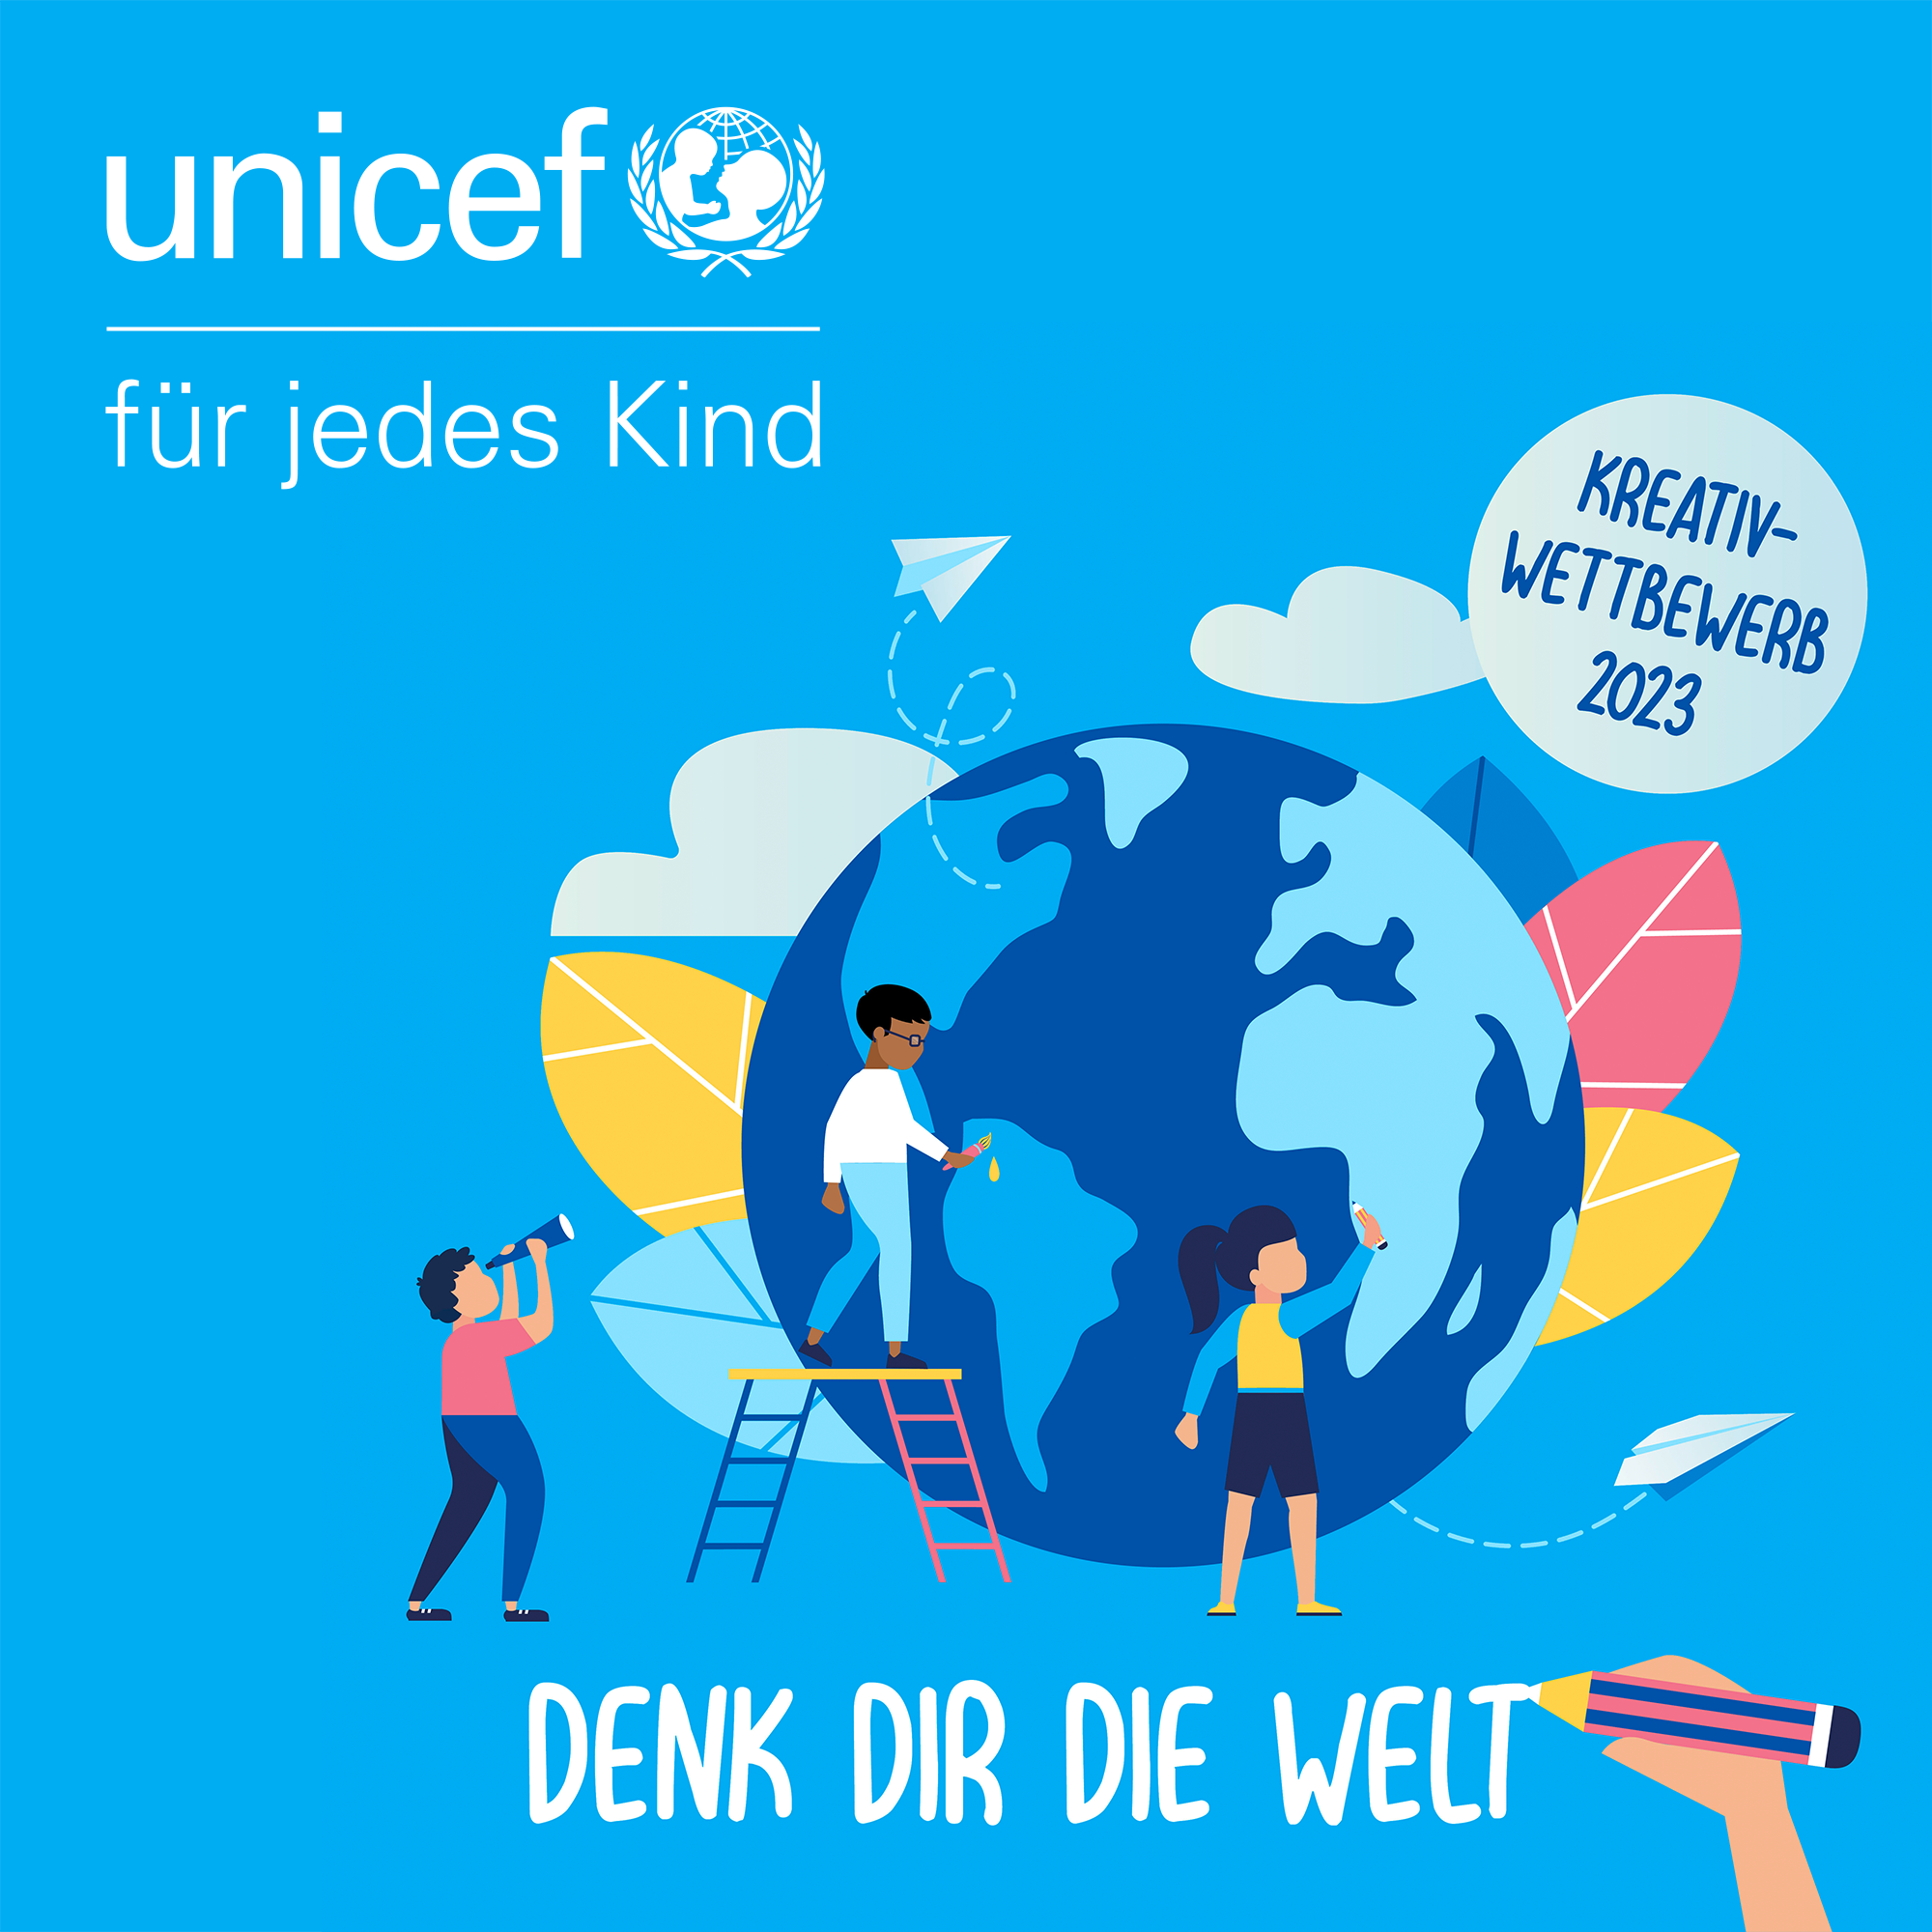  Denk dir die Welt! - UNICEF-Ideenwettbewerb 2023 - Logo